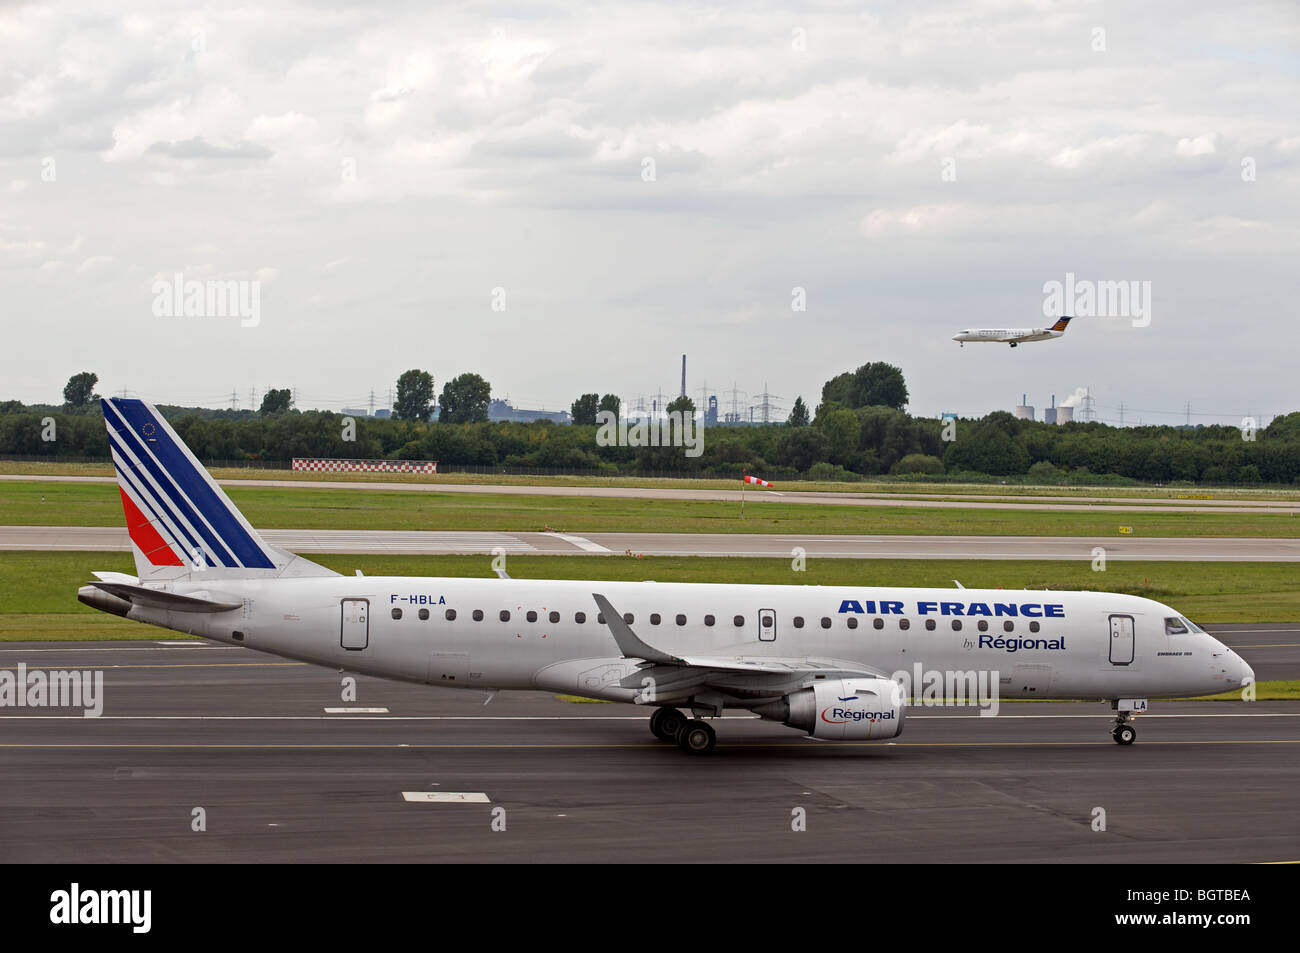 Air France Regional passenger airliner Stock Photo